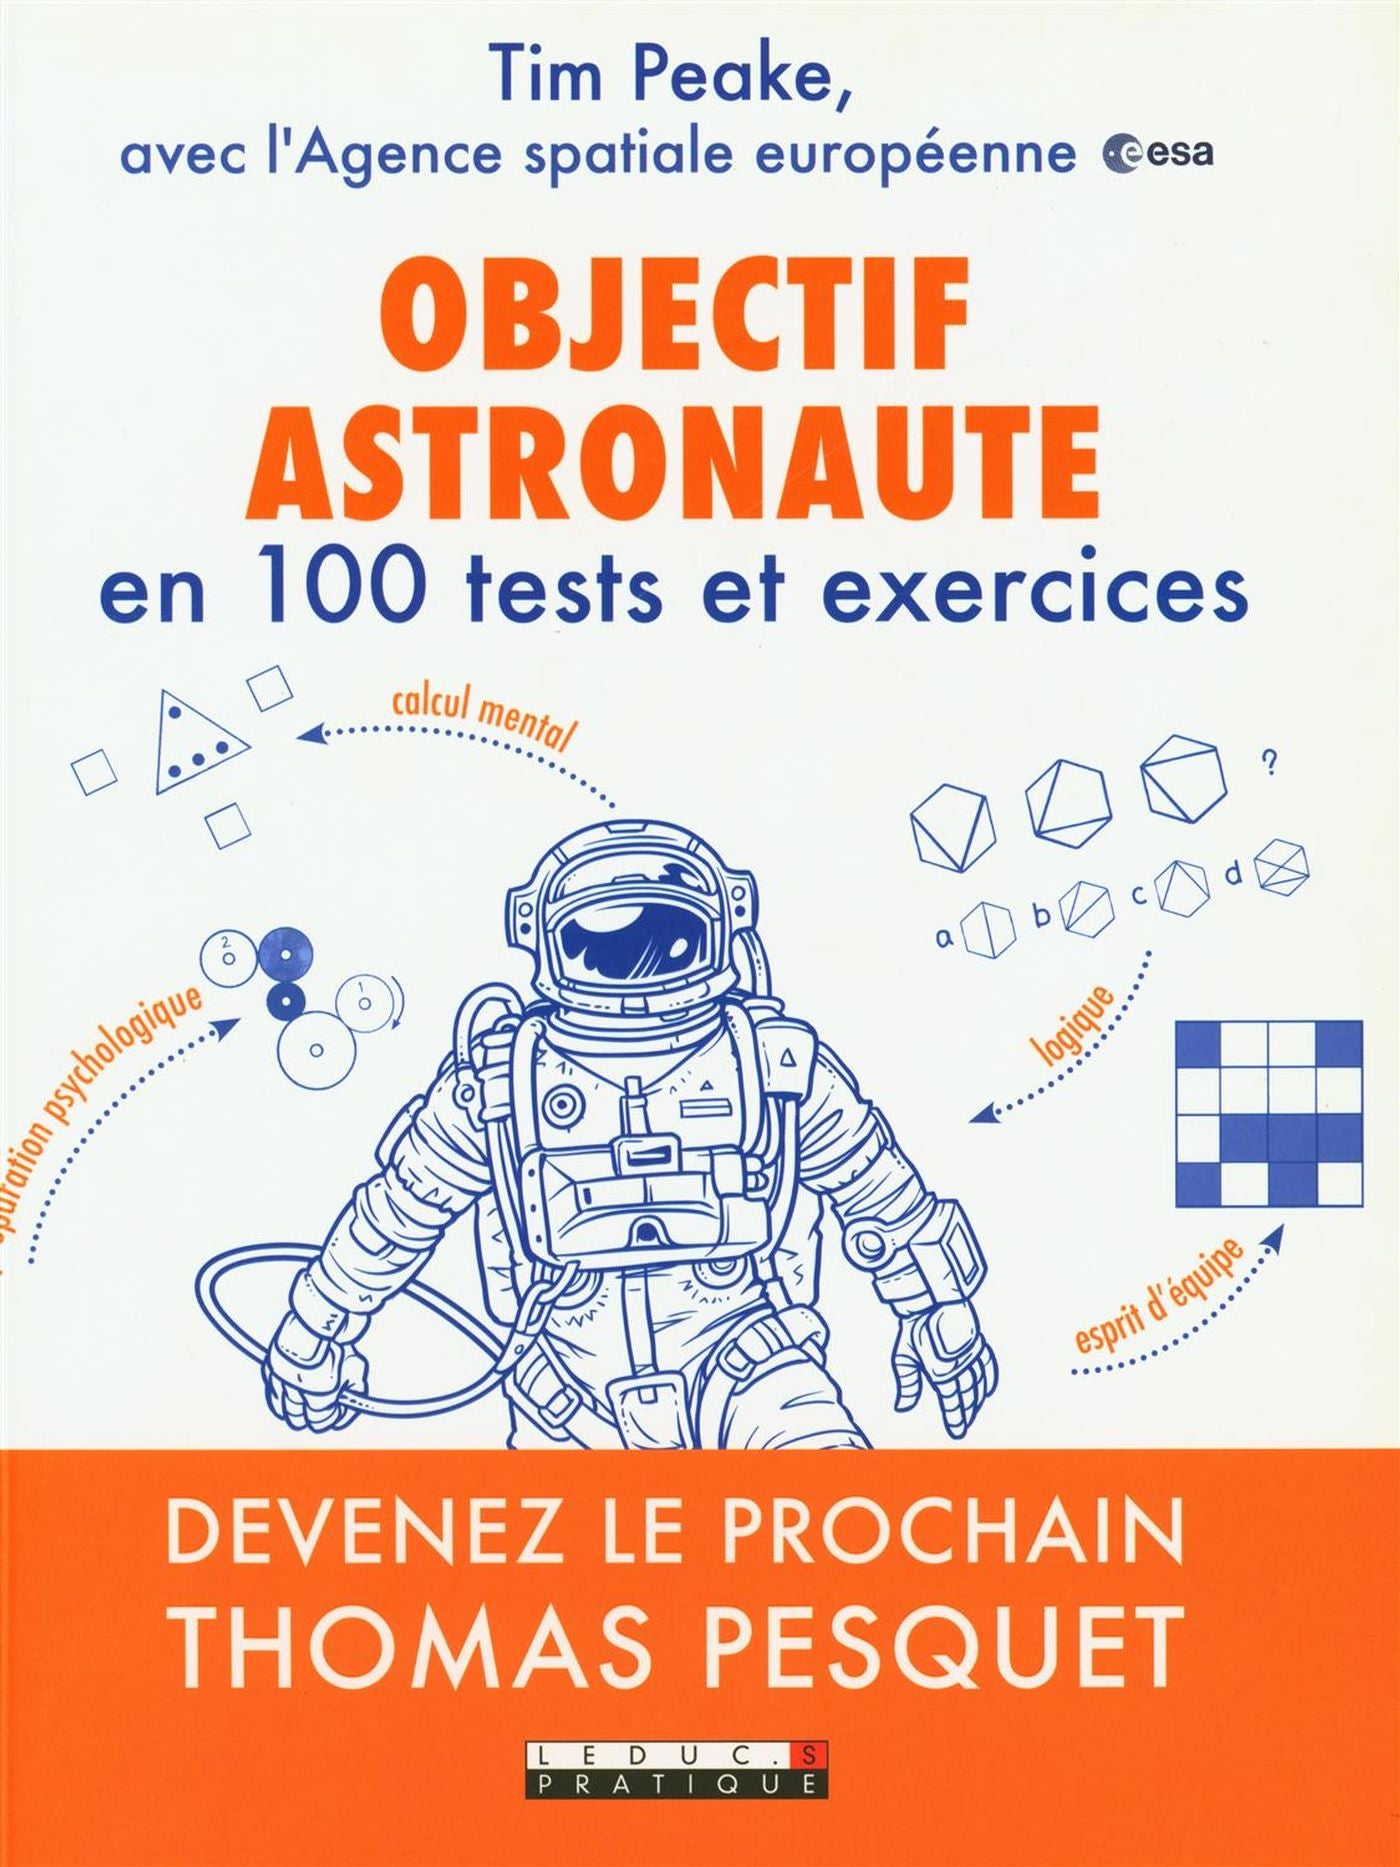 Objectif Astronaute en 100 tests et exercices : Devenez le prochain Thomas Pesquet - Tim Peake